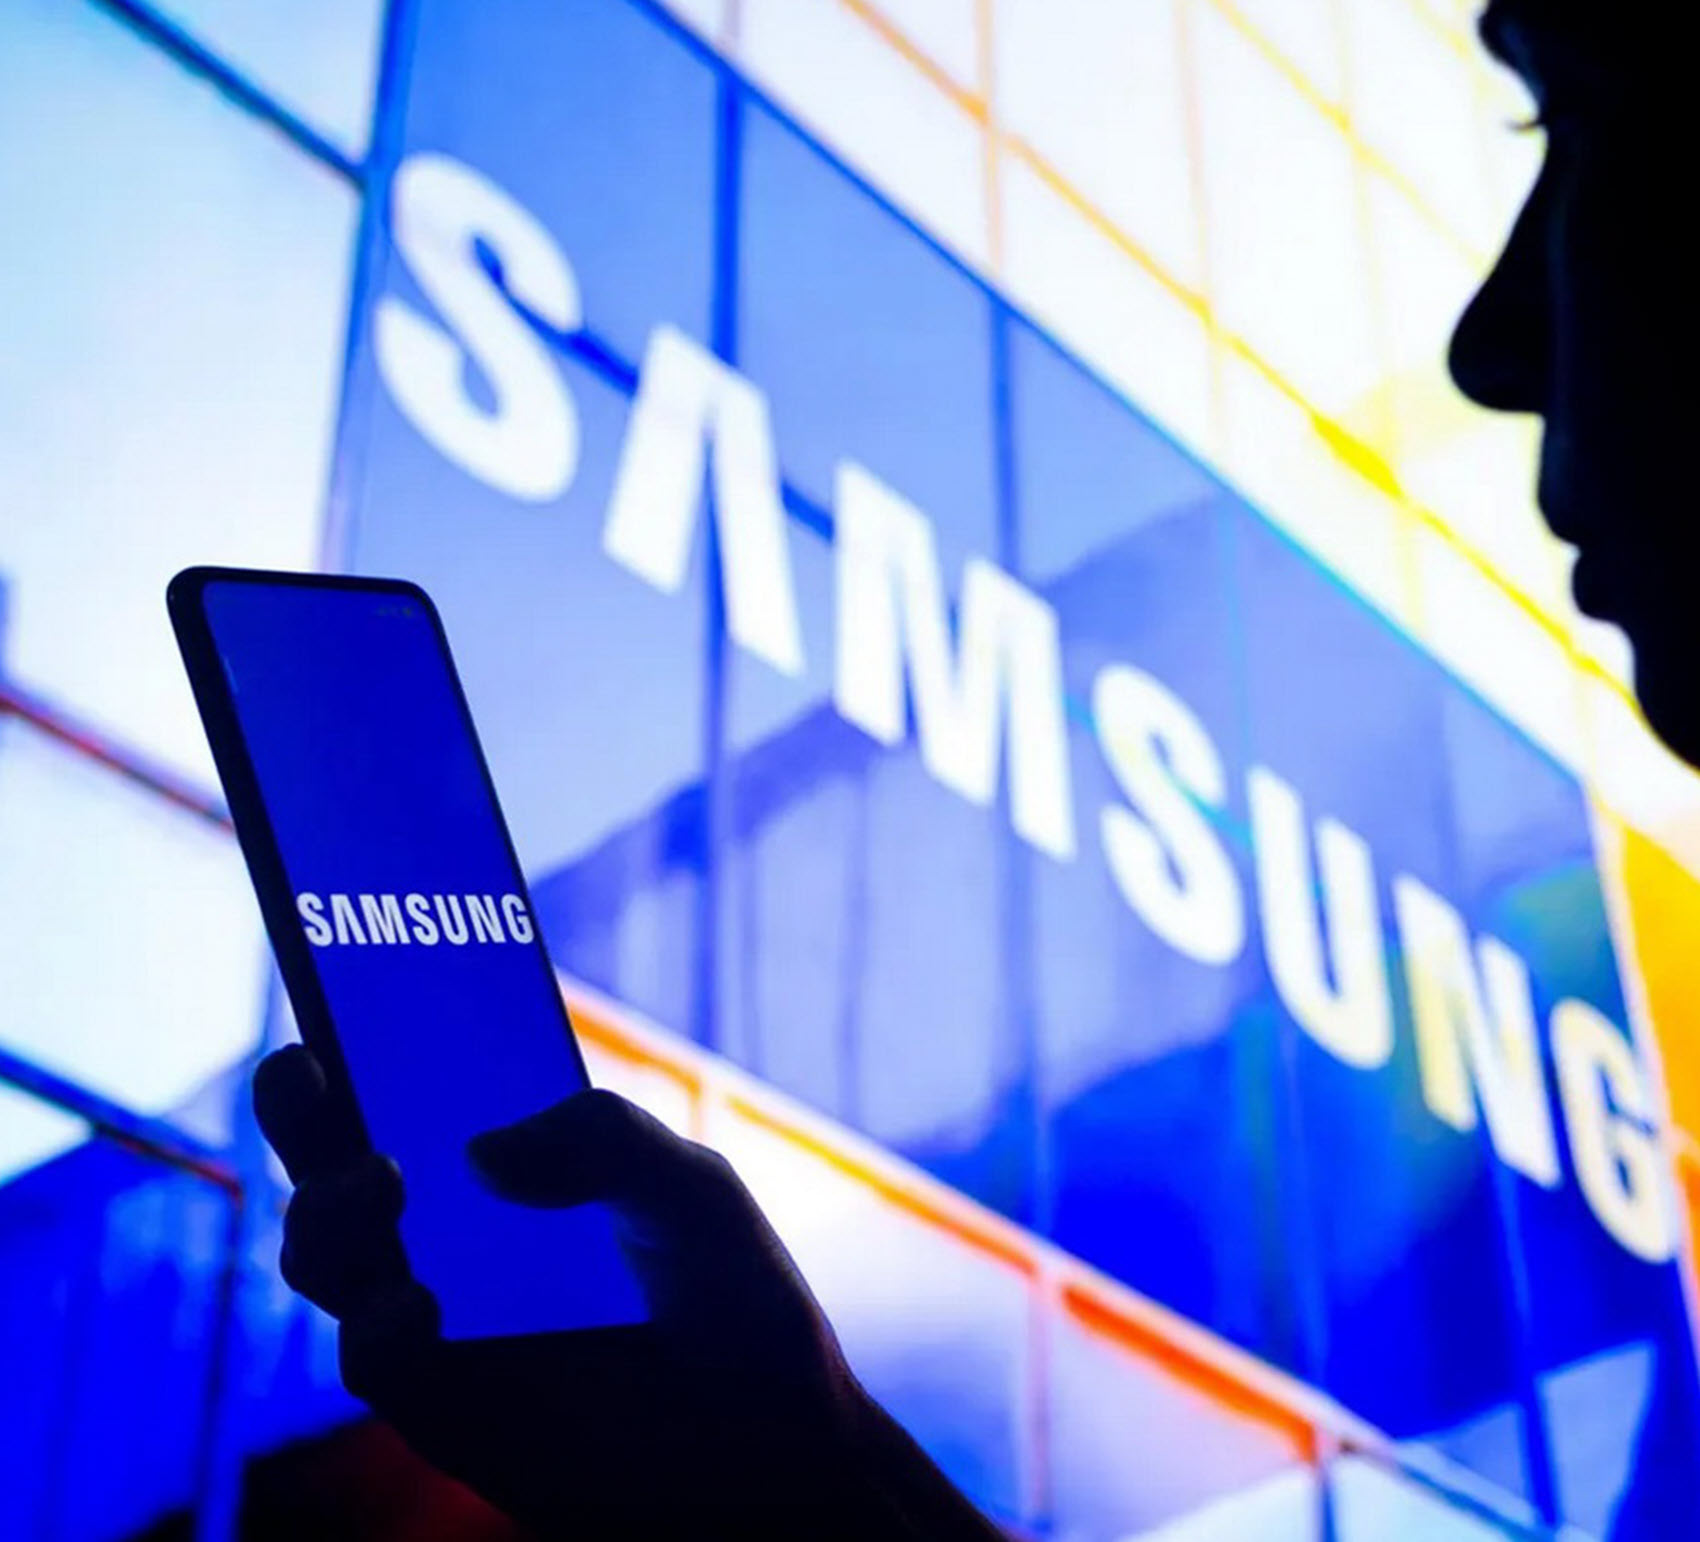 Η Samsung κατακτά την πρώτη θέση στην ετήσια λίστα του Forbes «Οι καλύτεροι εργοδότες στον κόσμο »